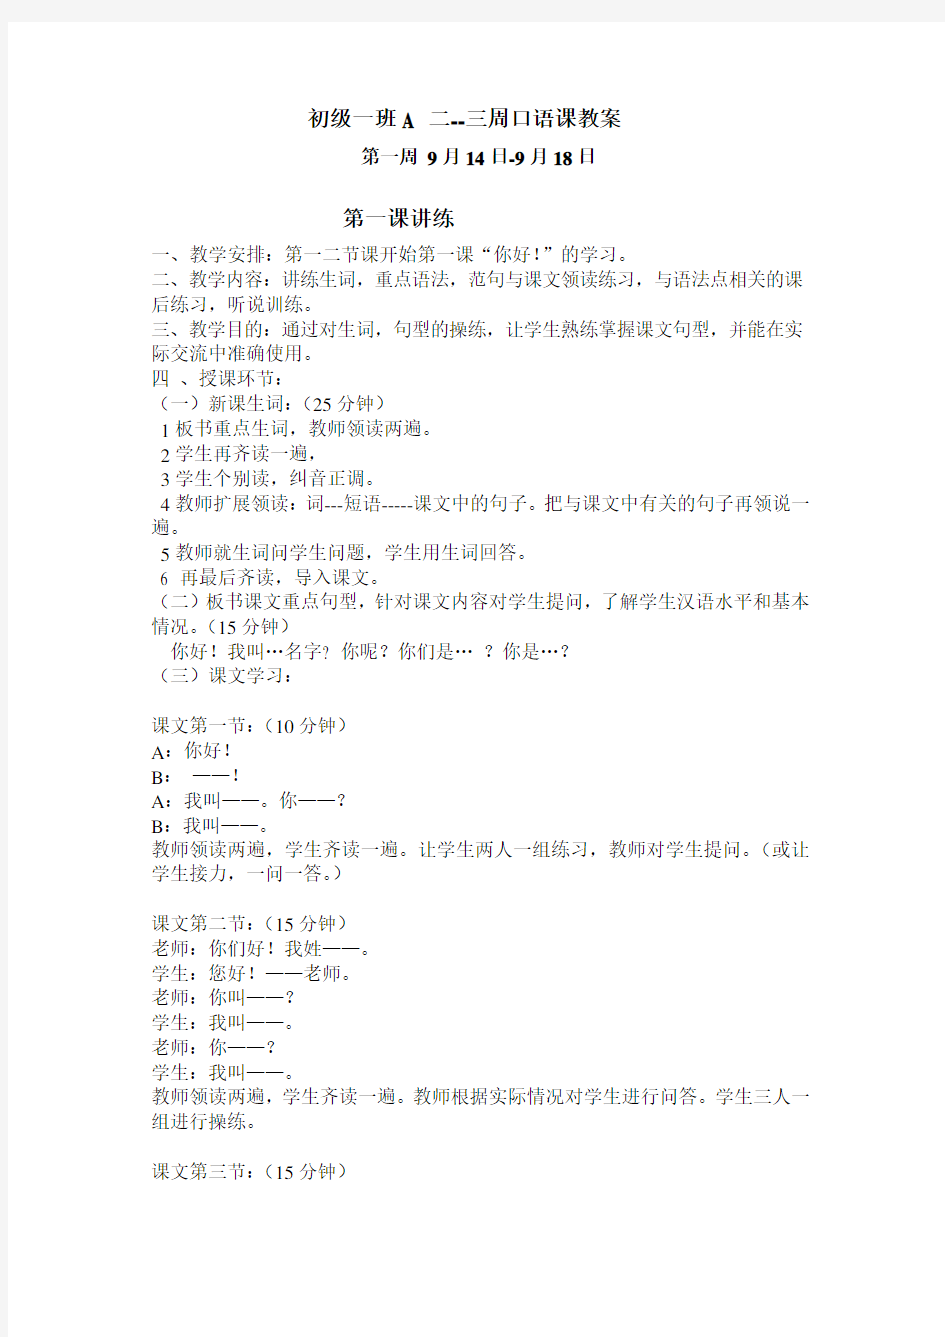 《初级汉语口语》上册教案,第1--30课